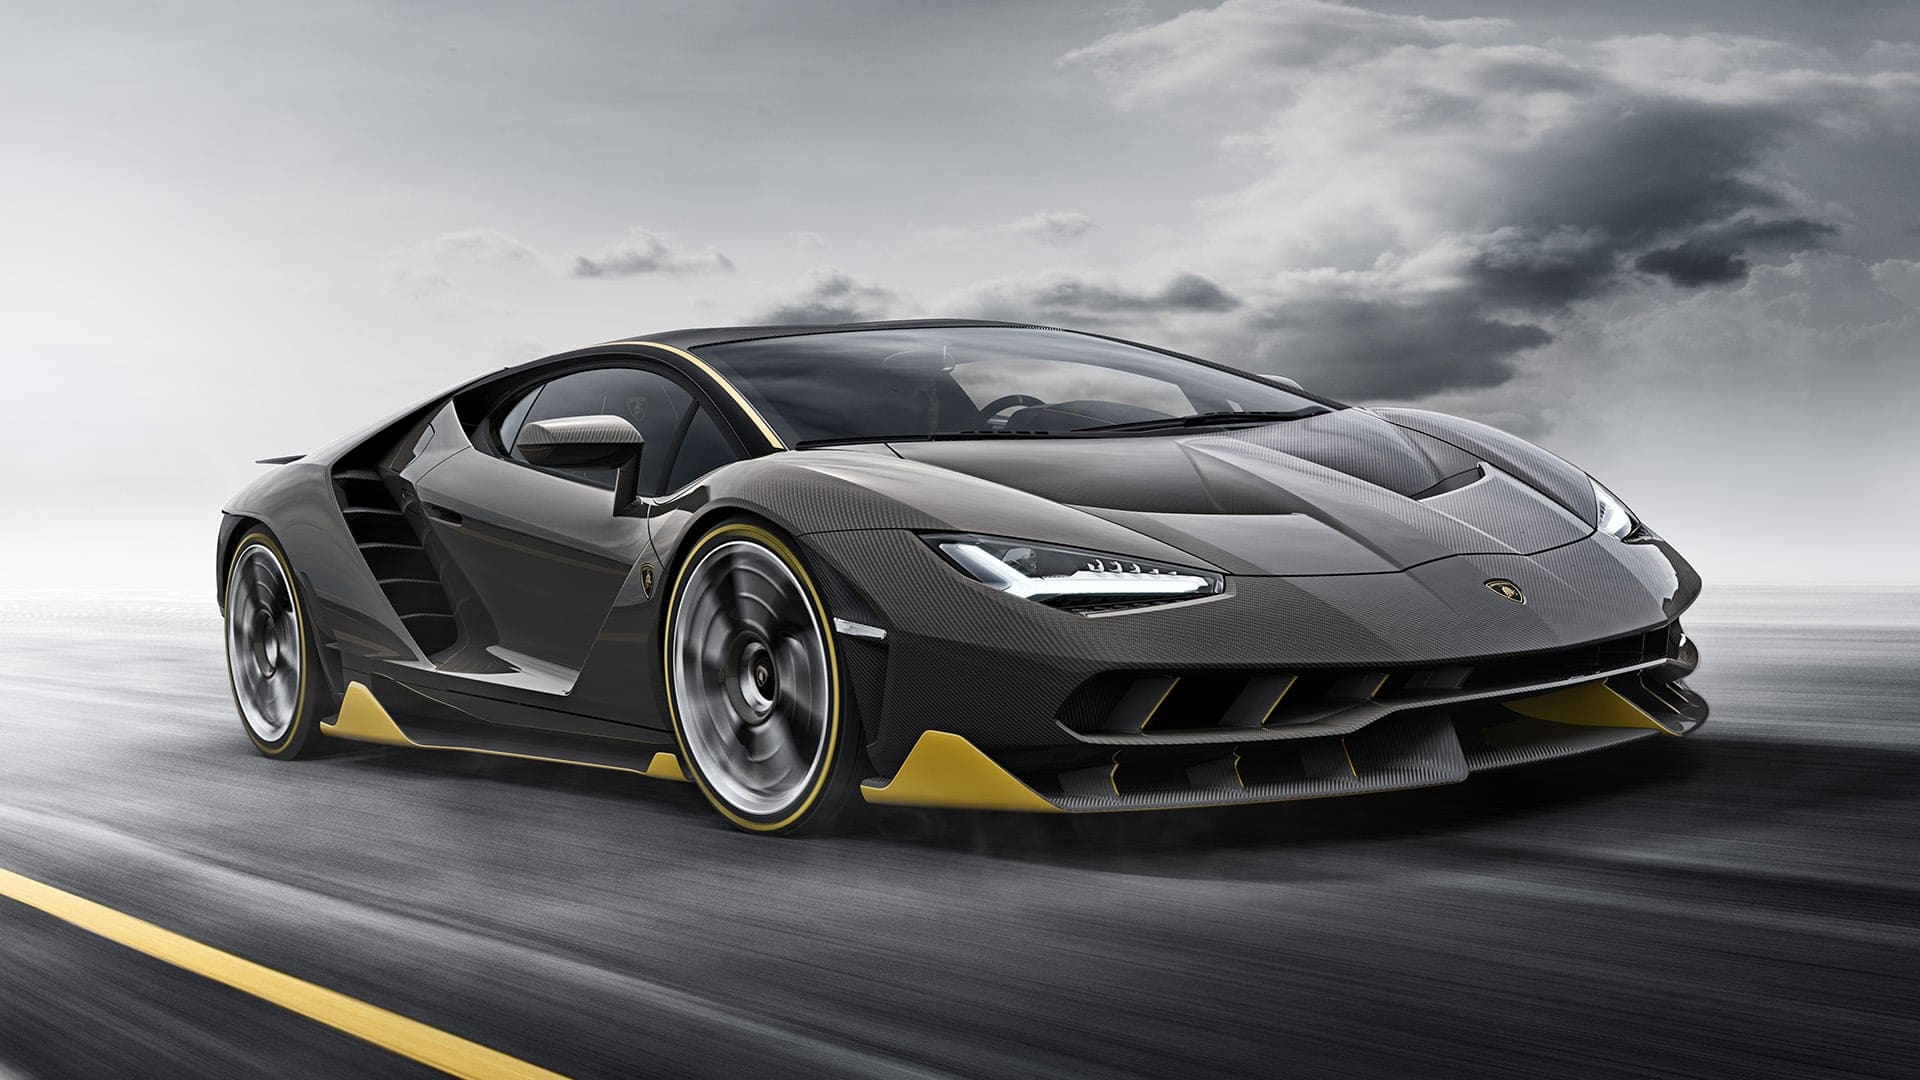 Εσείς το ξέρατε ότι οι Lamborghini δημιουργήθηκαν μετά από έναν… καβγά;